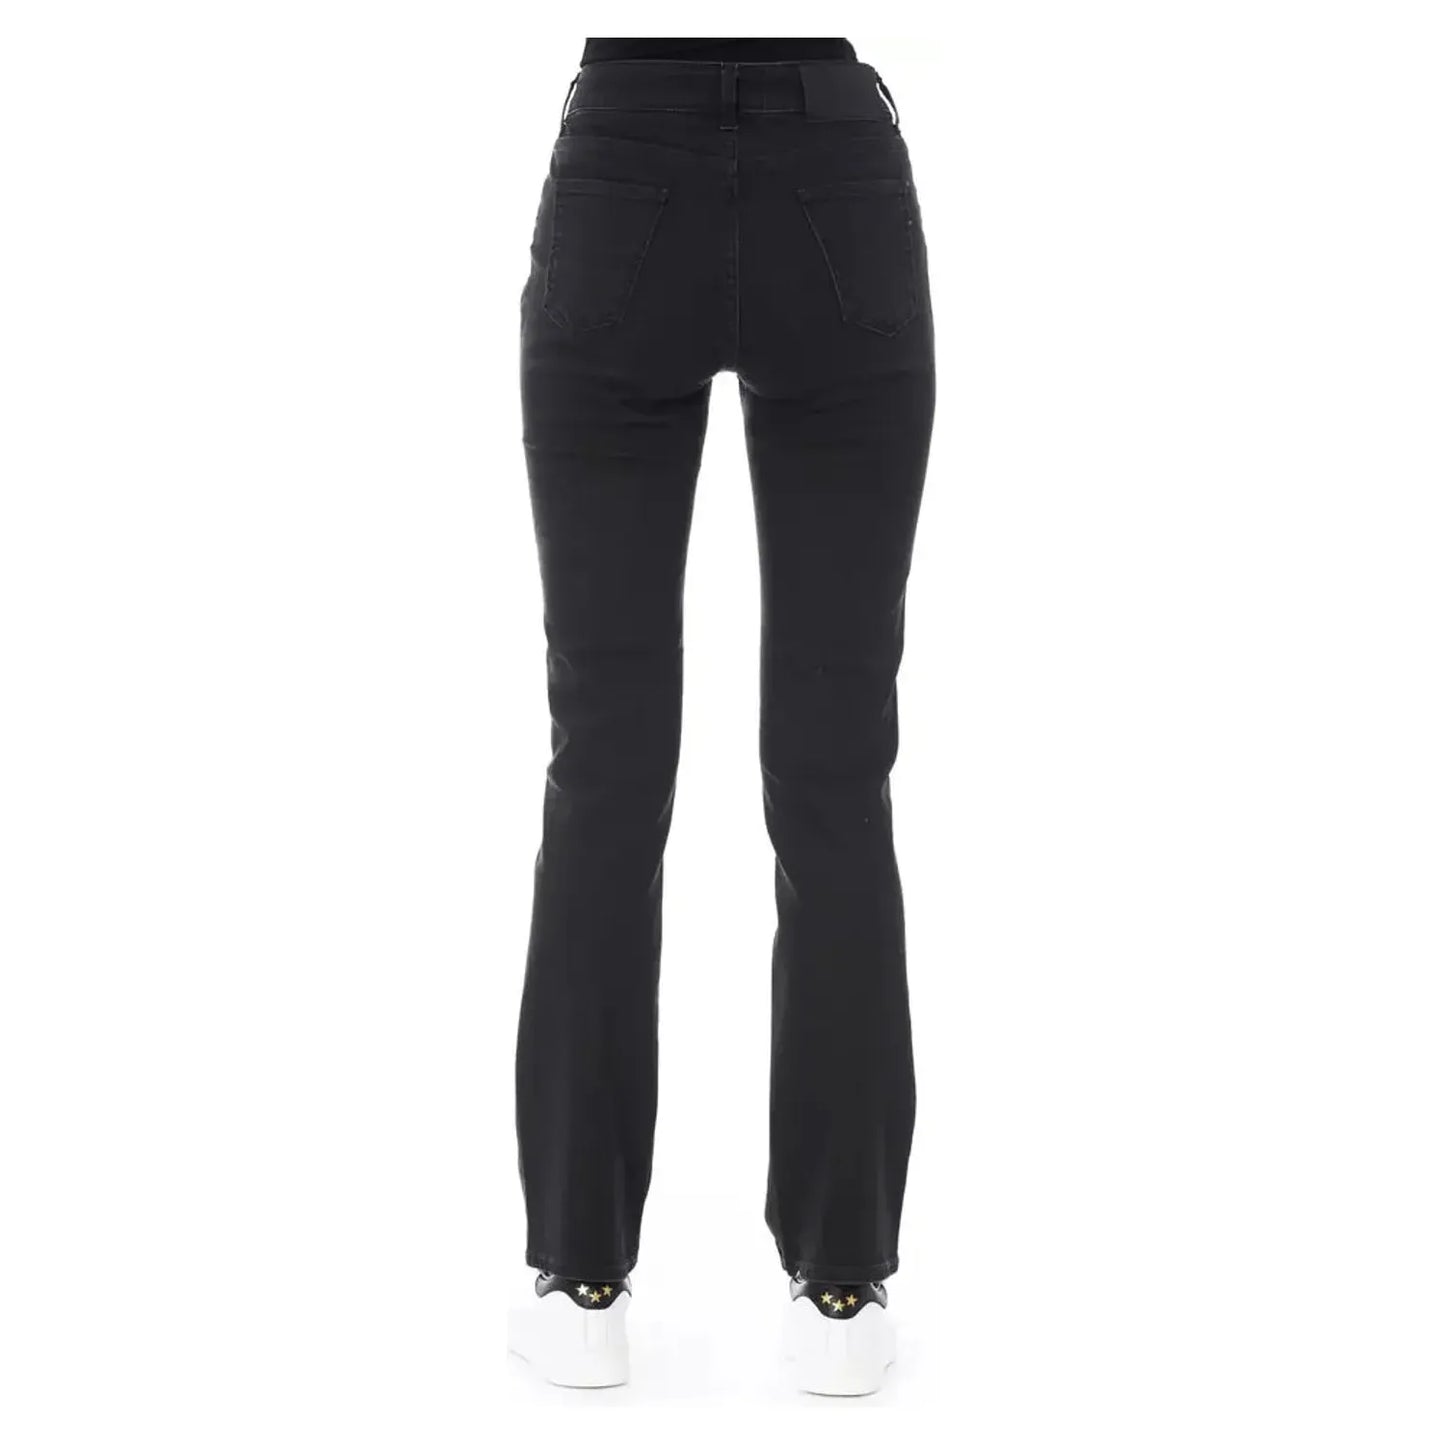 Baldinini Trend Elegant Black Cotton Stretch Jeans black-cotton-jeans-pant-12 product-23110-1455527818-19-c24505e7-912.webp